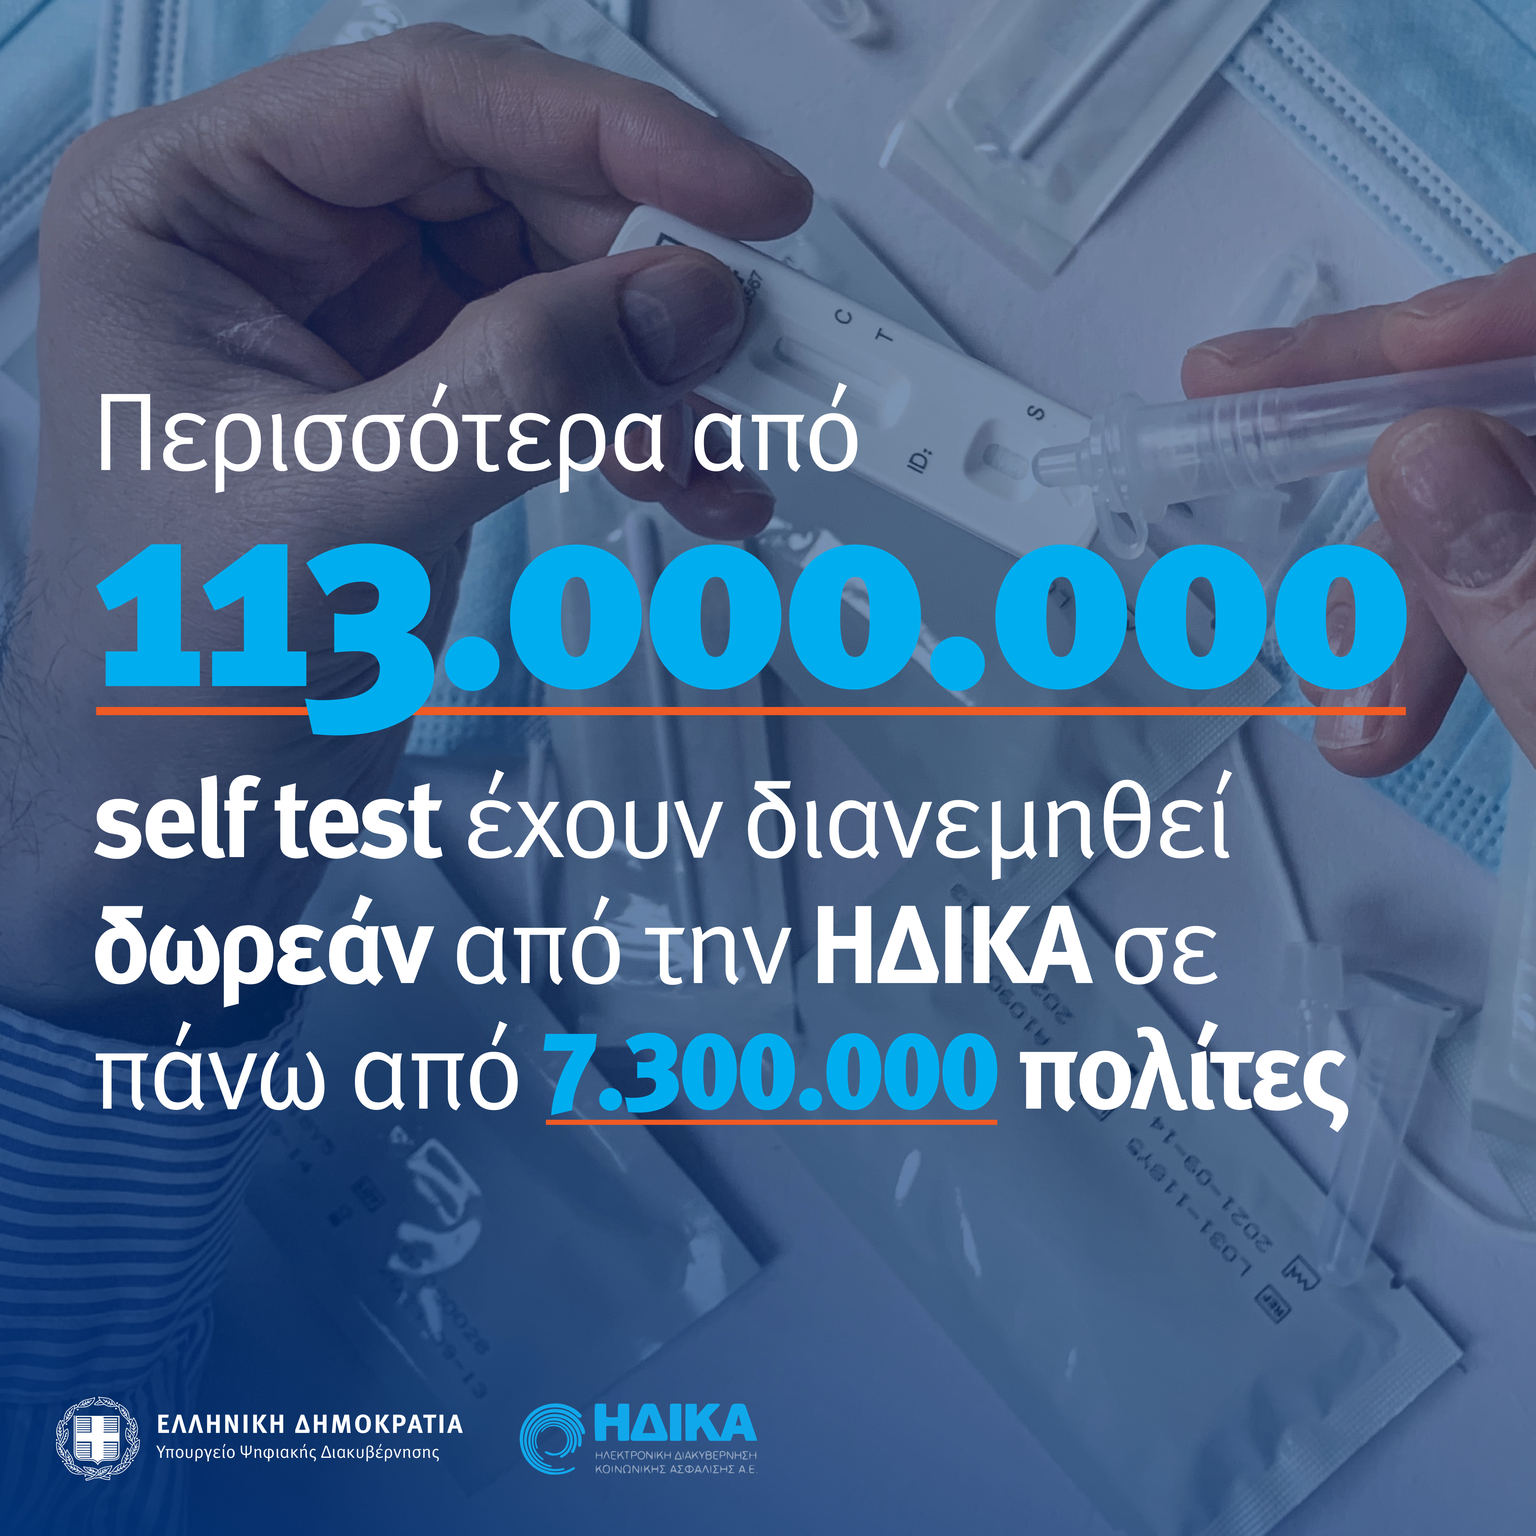 Περισσότερα από 113.000.000 δωρεάν selftest έχουν διανεμηθεί δωρεάν από την ΗΔΙΚΑ